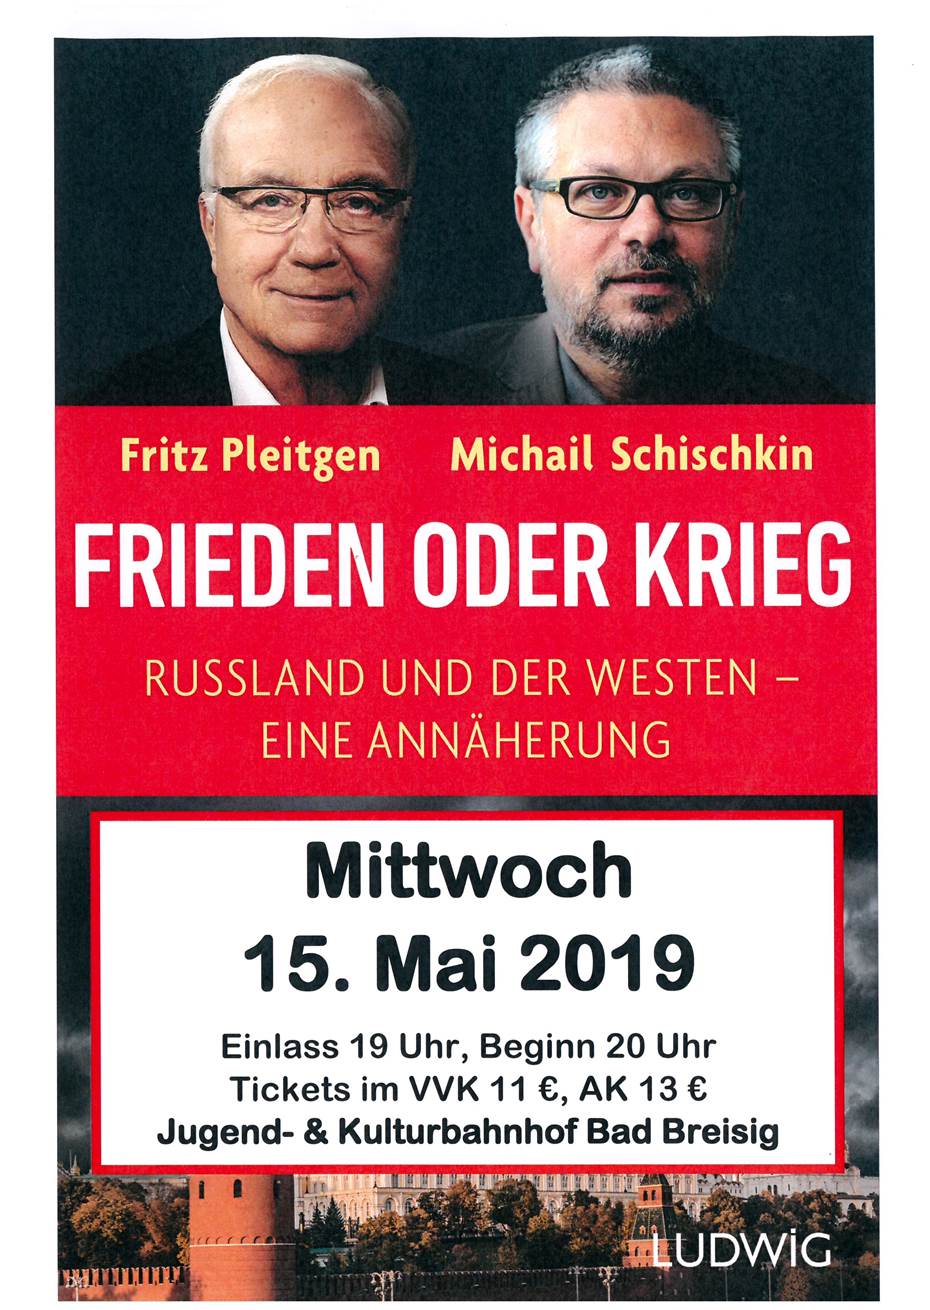 Fritz Pleitgen und Michail Schischkin